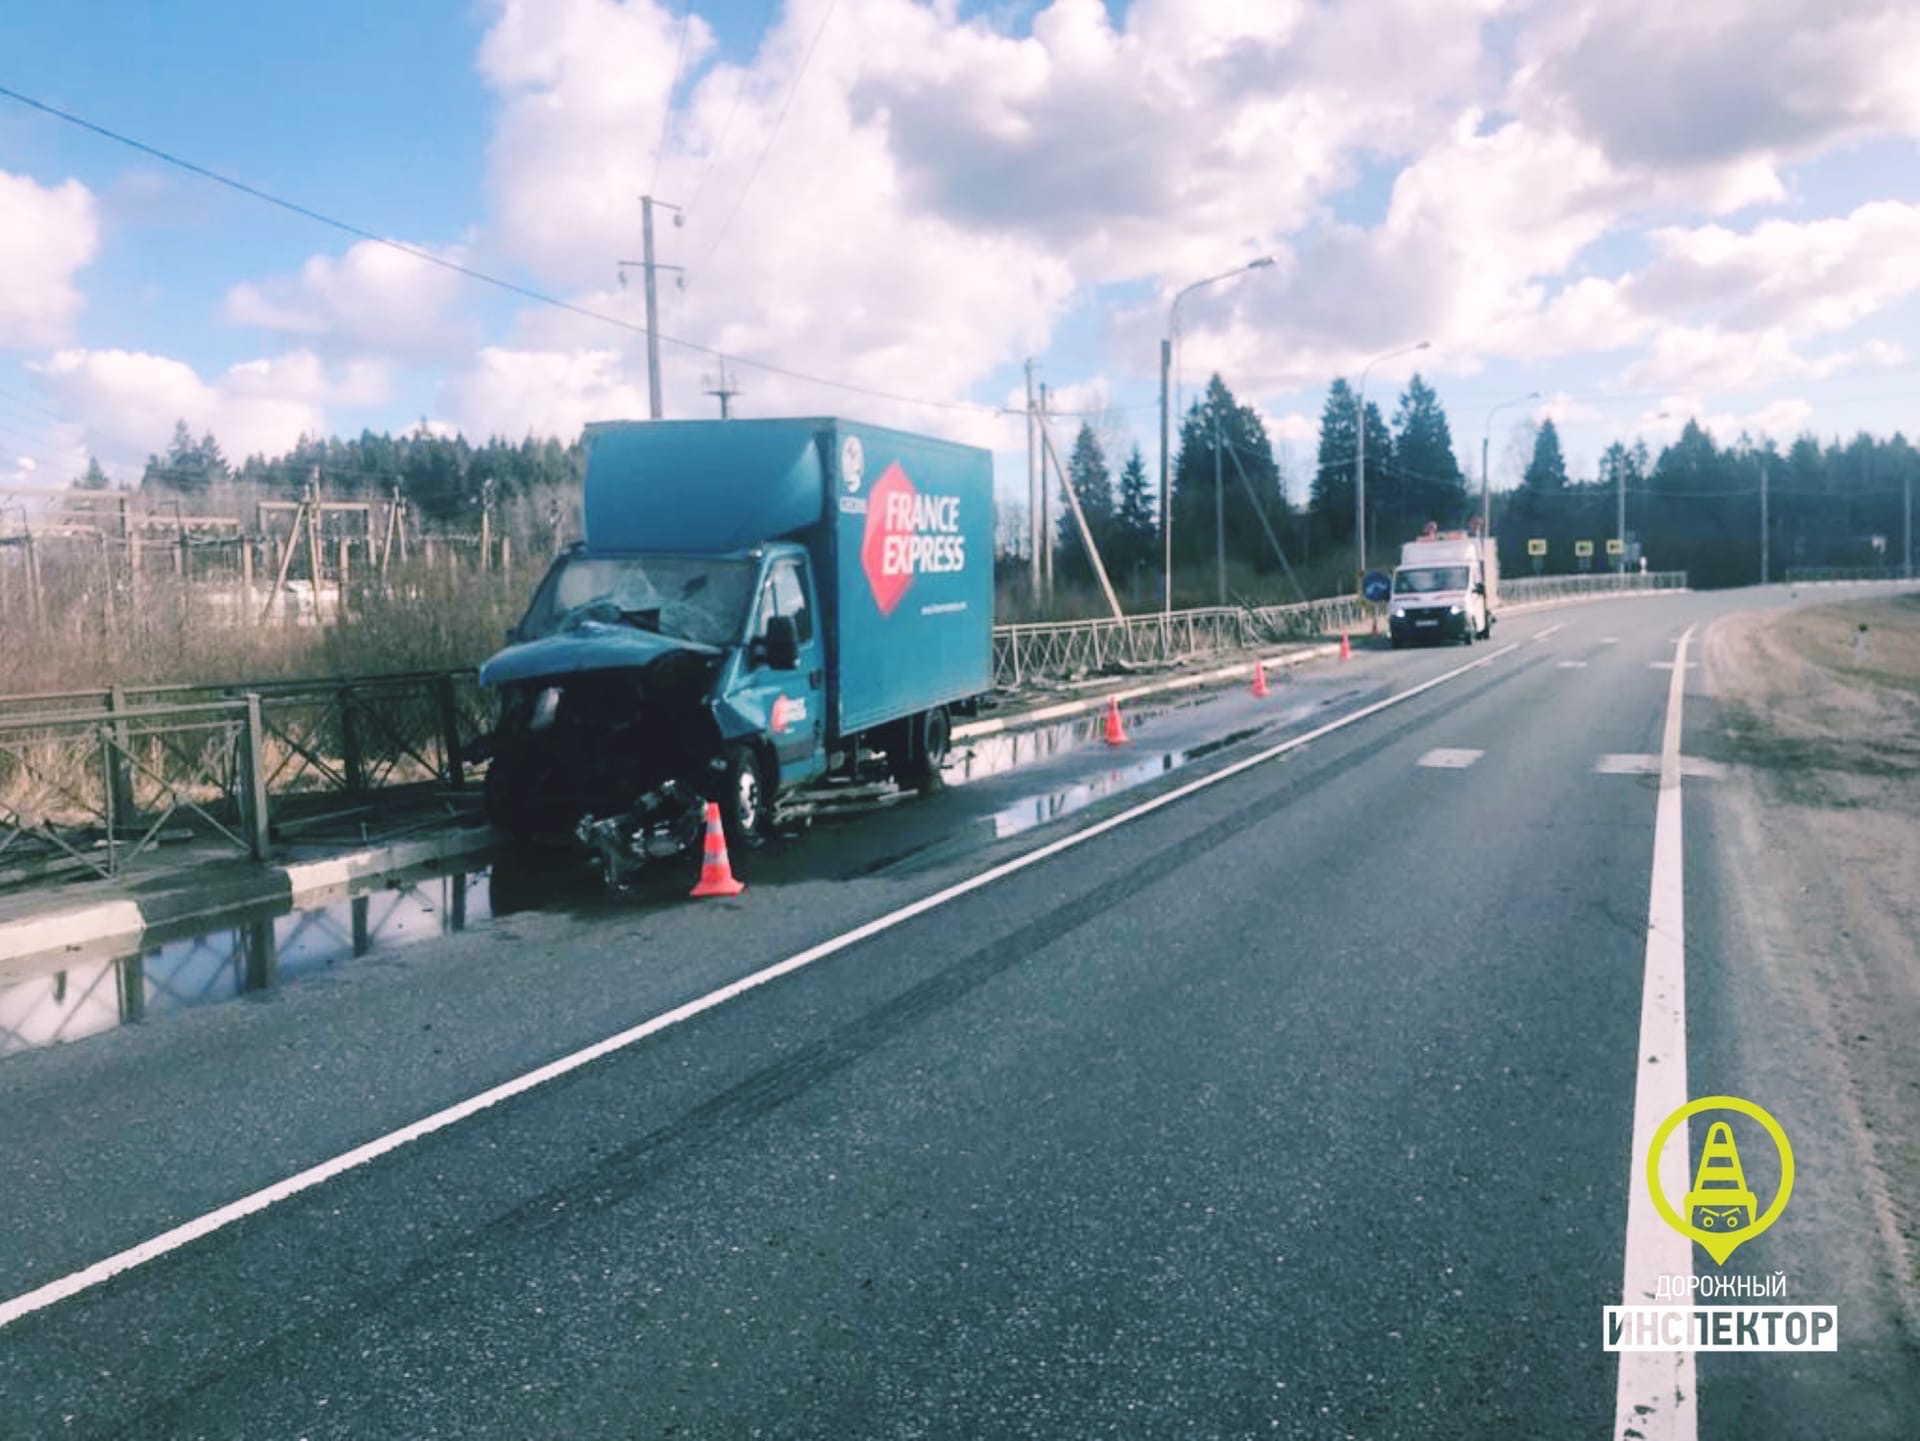 Доставка не доехала: грузовик на трассе Вологда — Новая Ладога, смахнув ограждения, снёс себе часть кабины